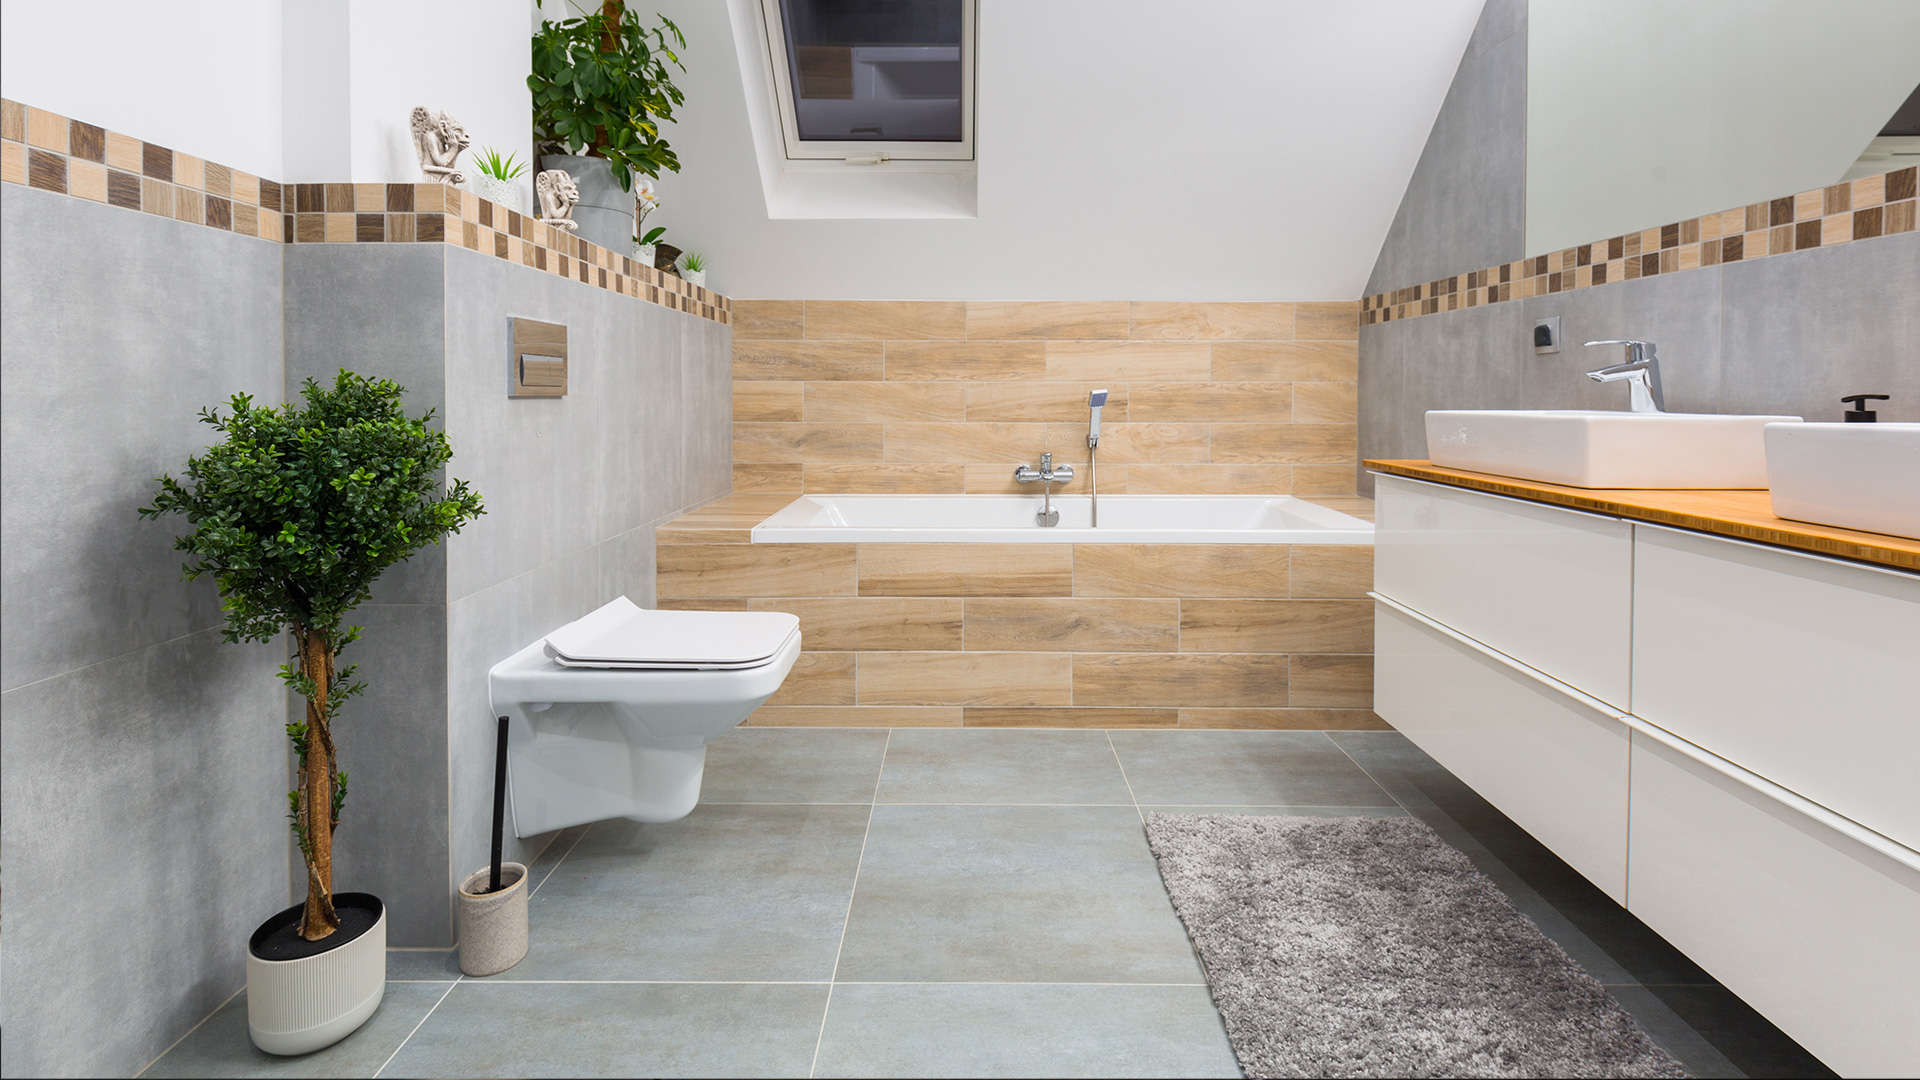 łazienka wyłożona płytkami: szarymi oraz imitującymi drewno -  w 2021